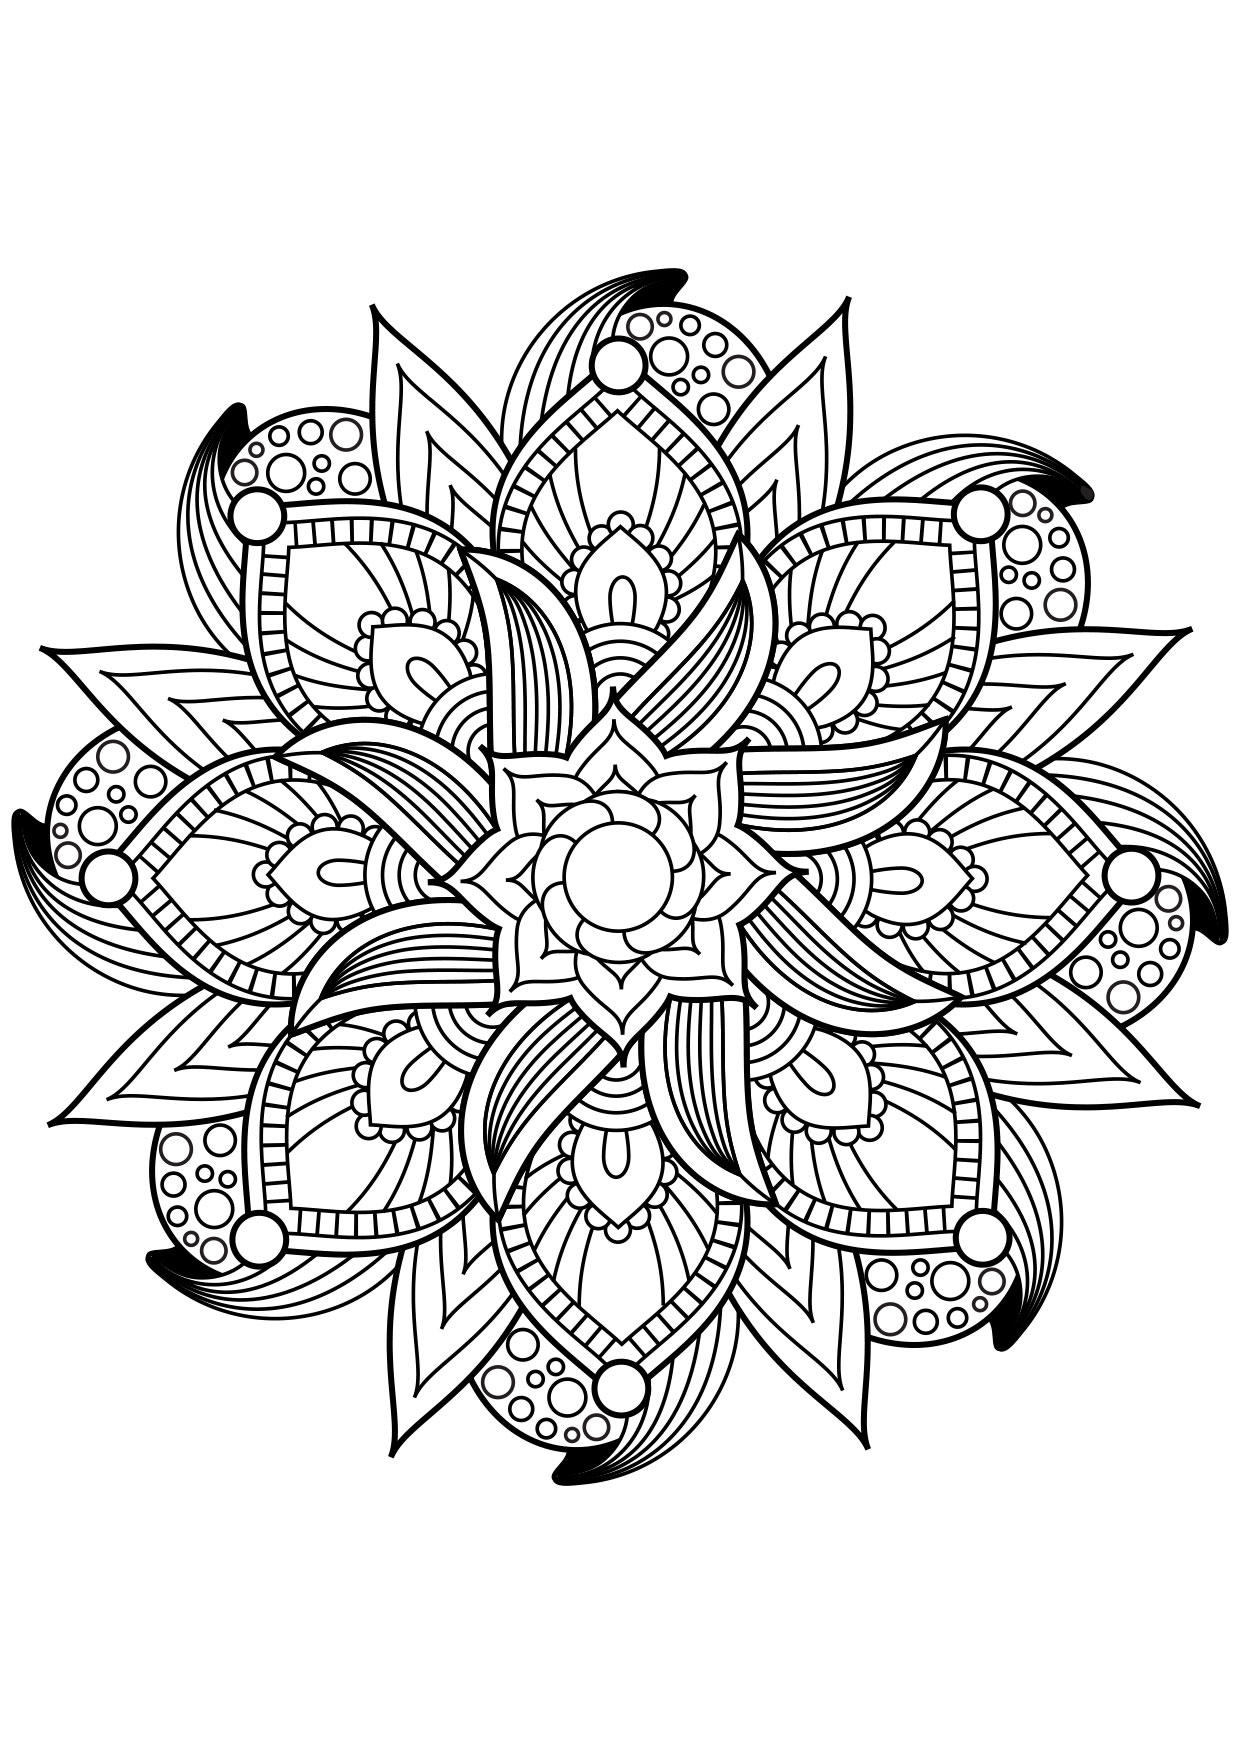 Kleurplaat Mandala